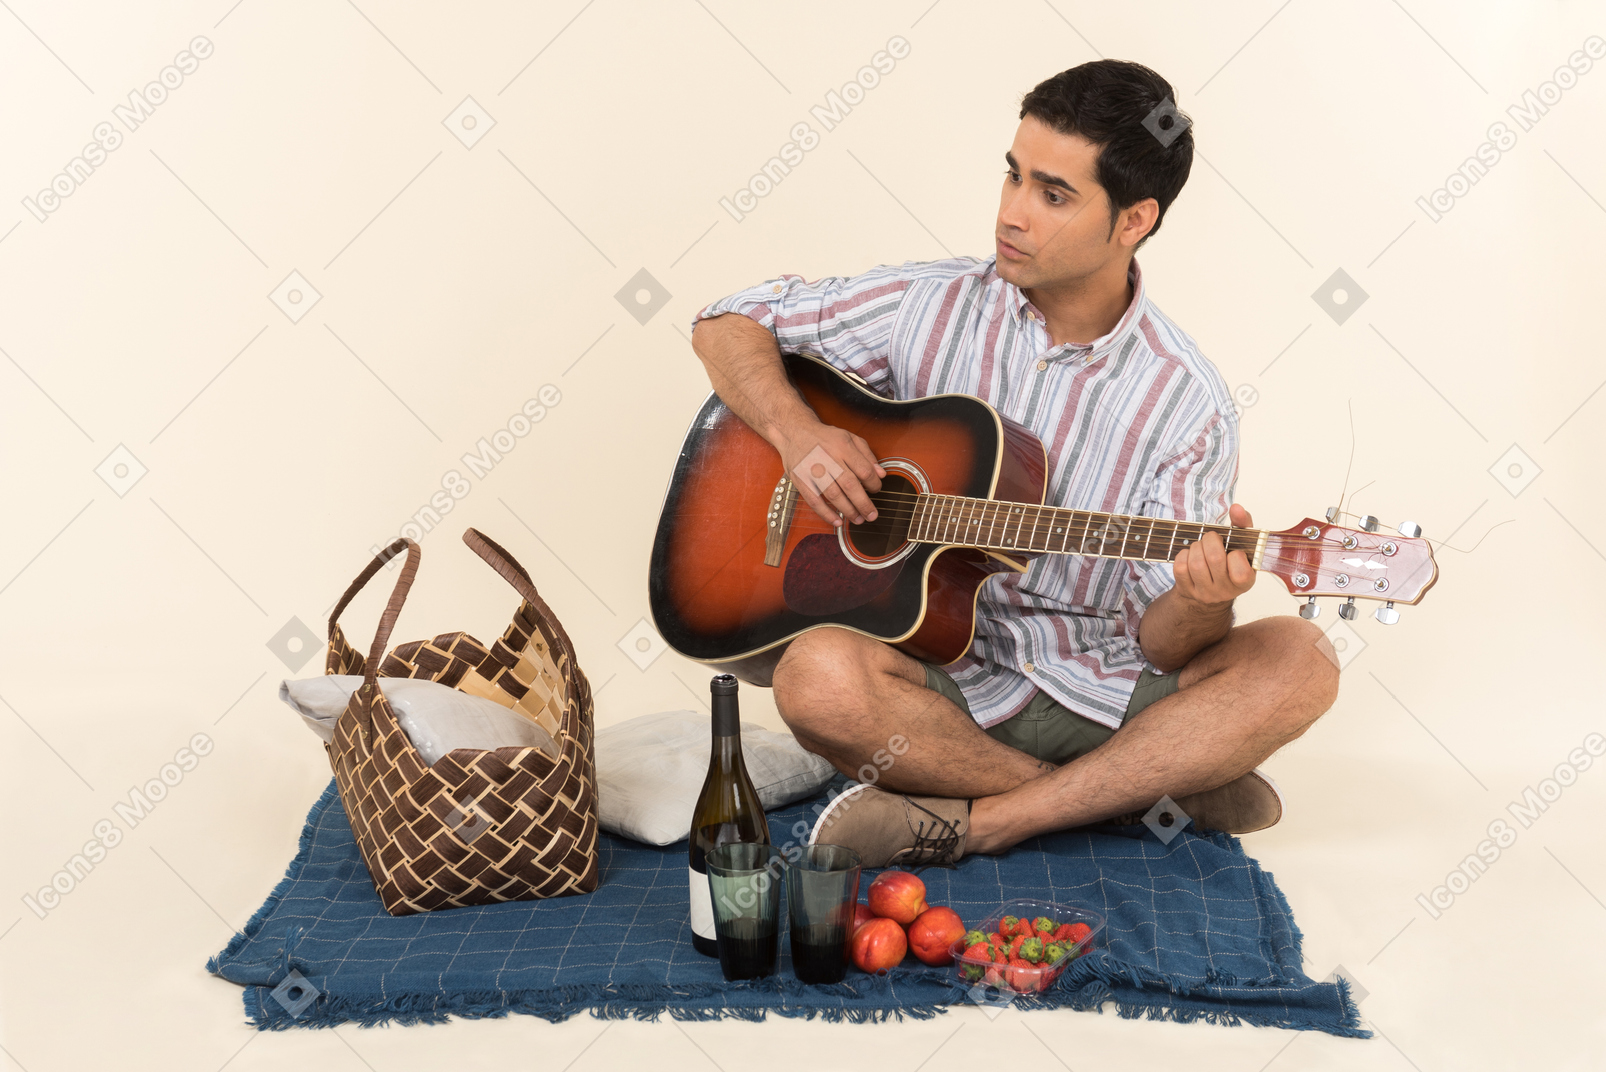 Junger kaukasischer kerl, der nahe picknickkorb auf der decke sitzt und gitarre spielt